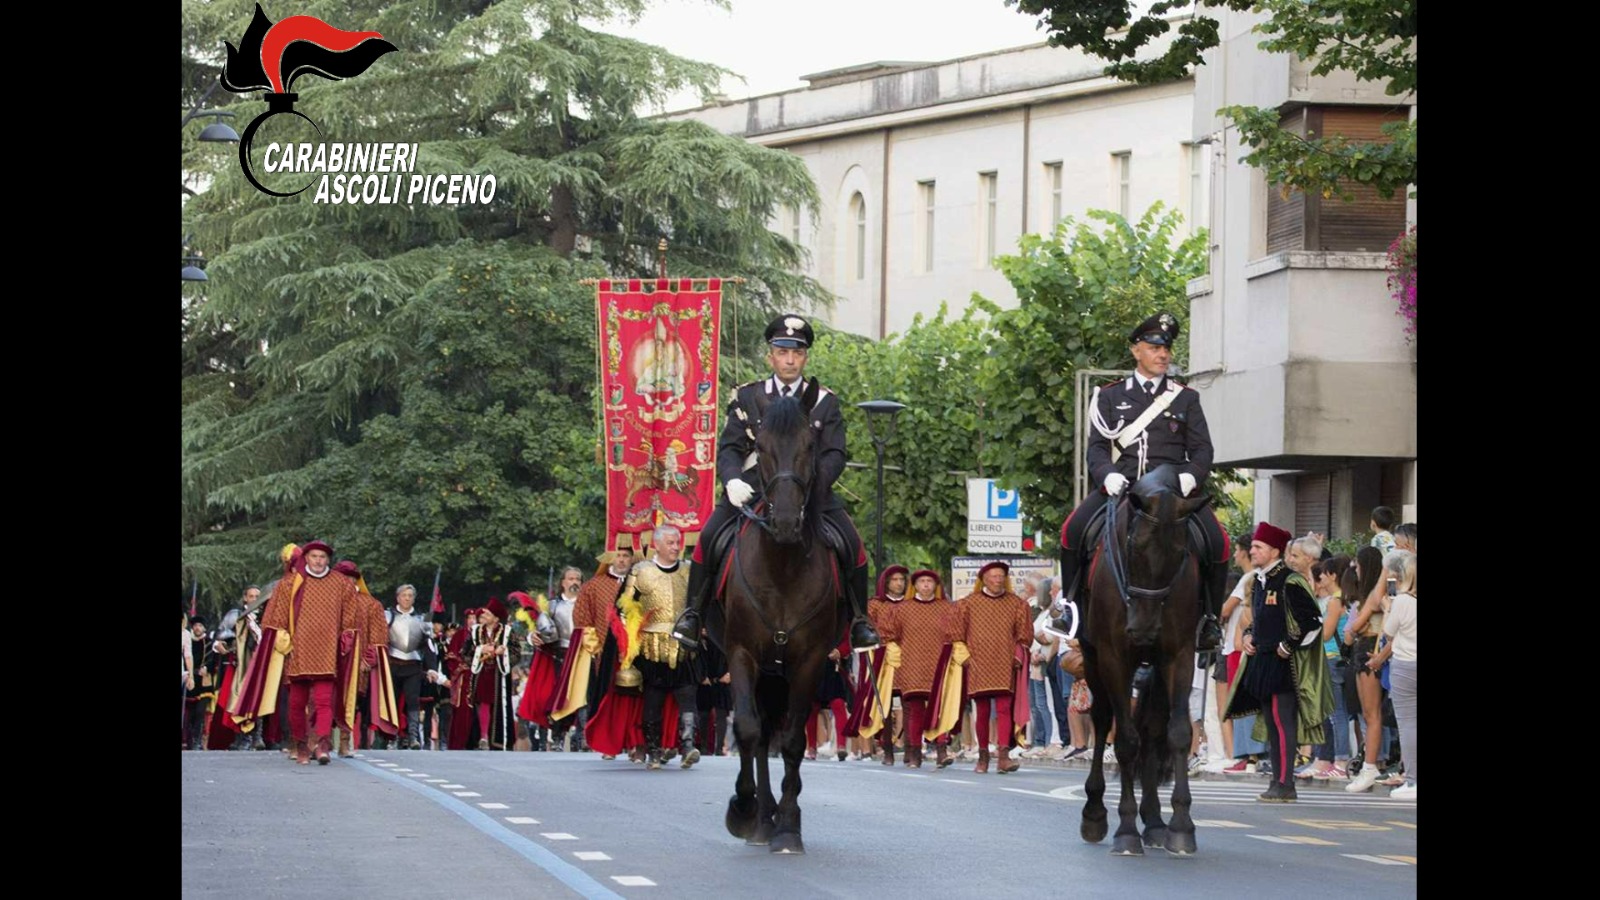 Ascoli Piceno – Quintana omaggiata dai carabinieri a cavallo